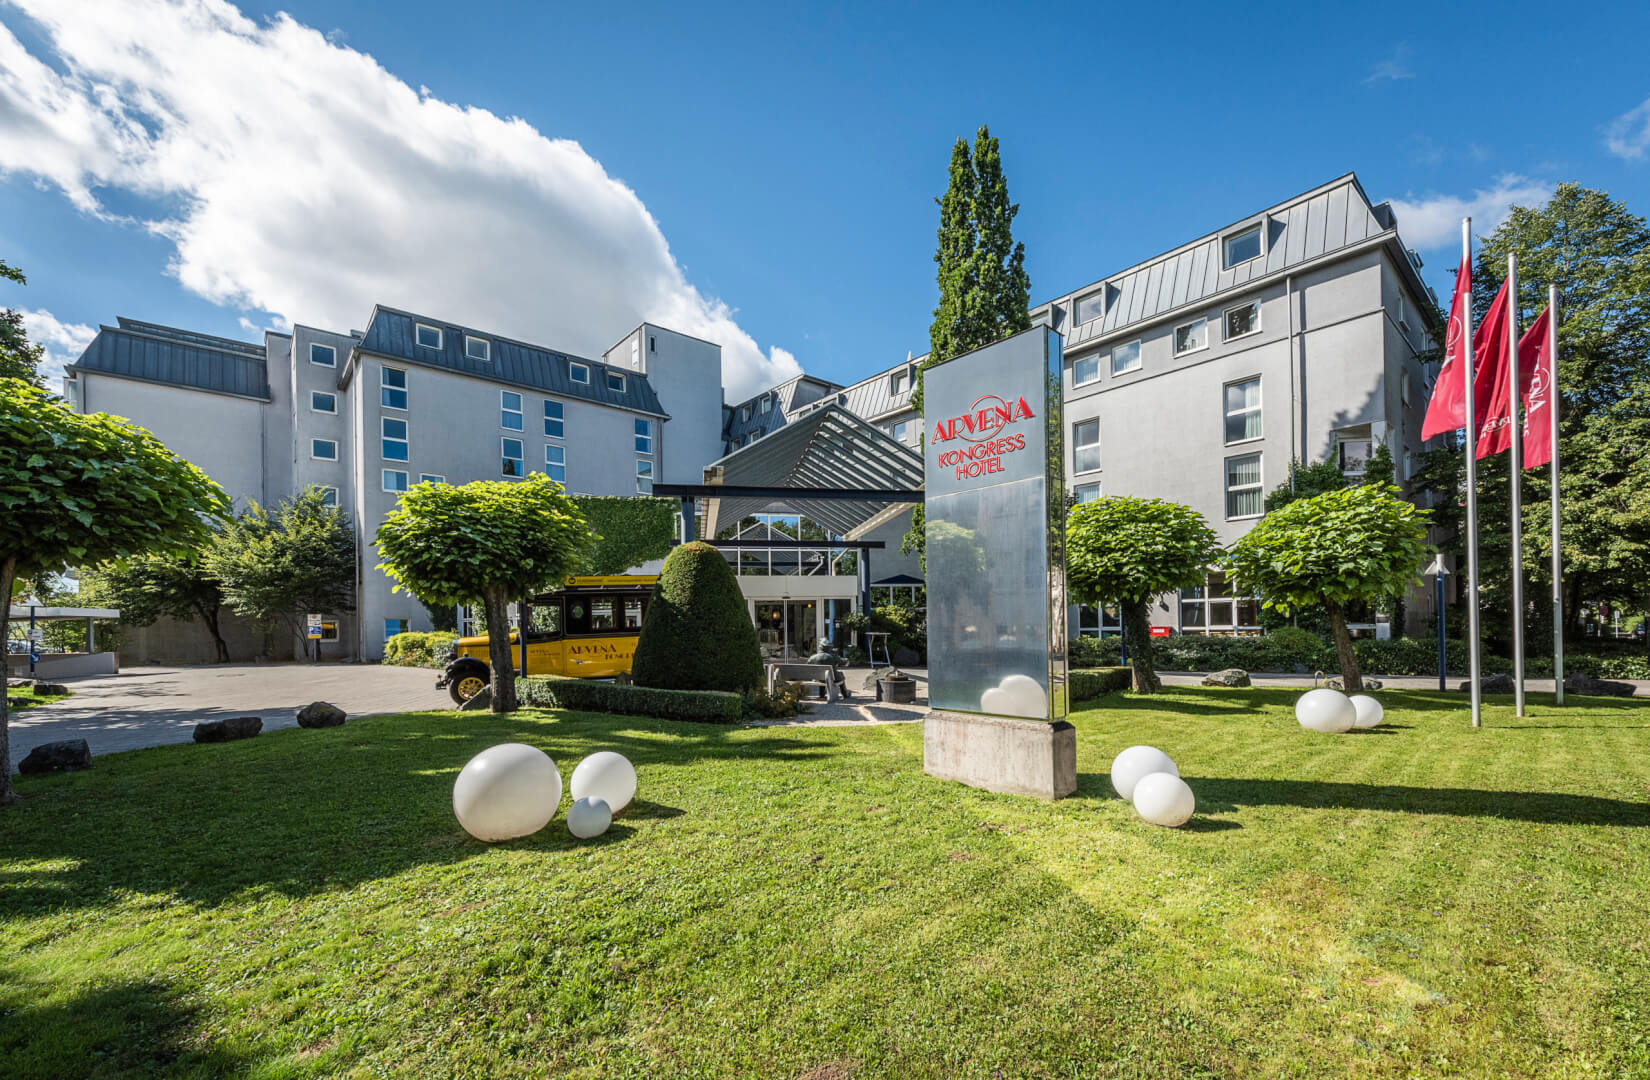 ARVENA KONGRESS Hotel in der Wagnerstadt